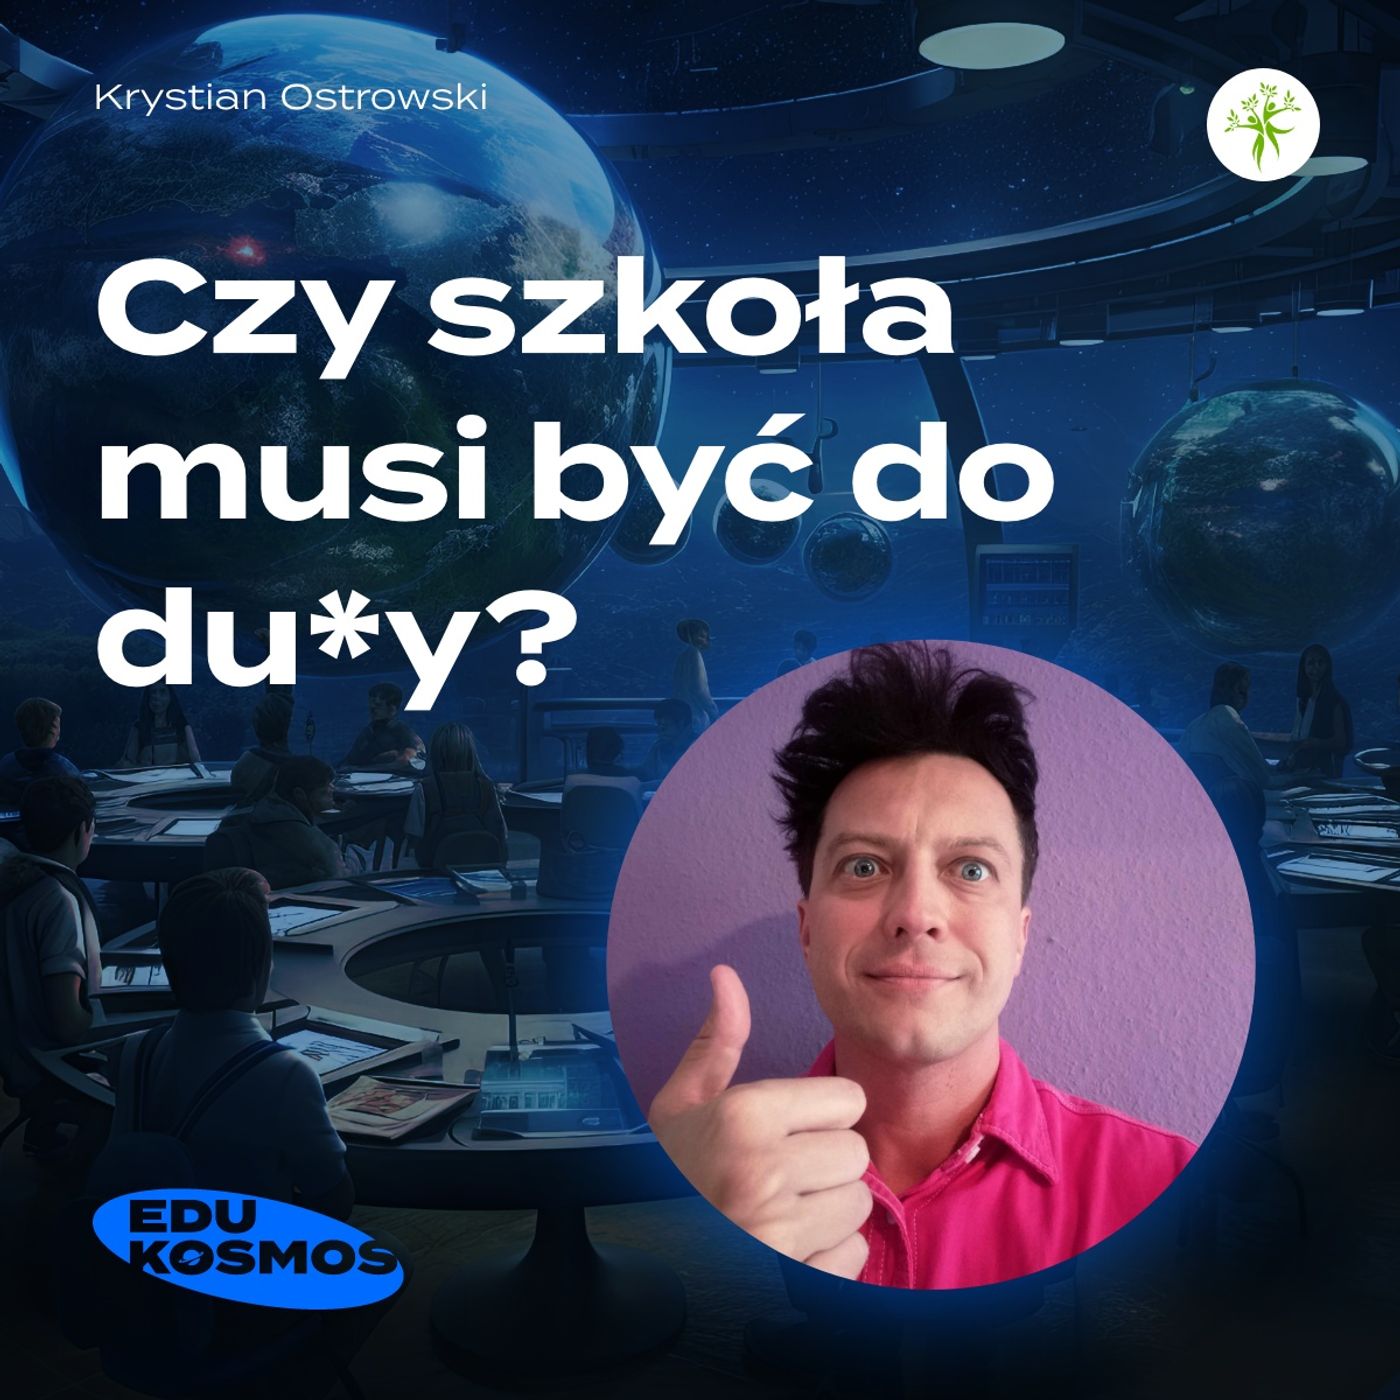 EDK#225: "Czy szkoła musi być do du*y?" - Krystian Ostrowski